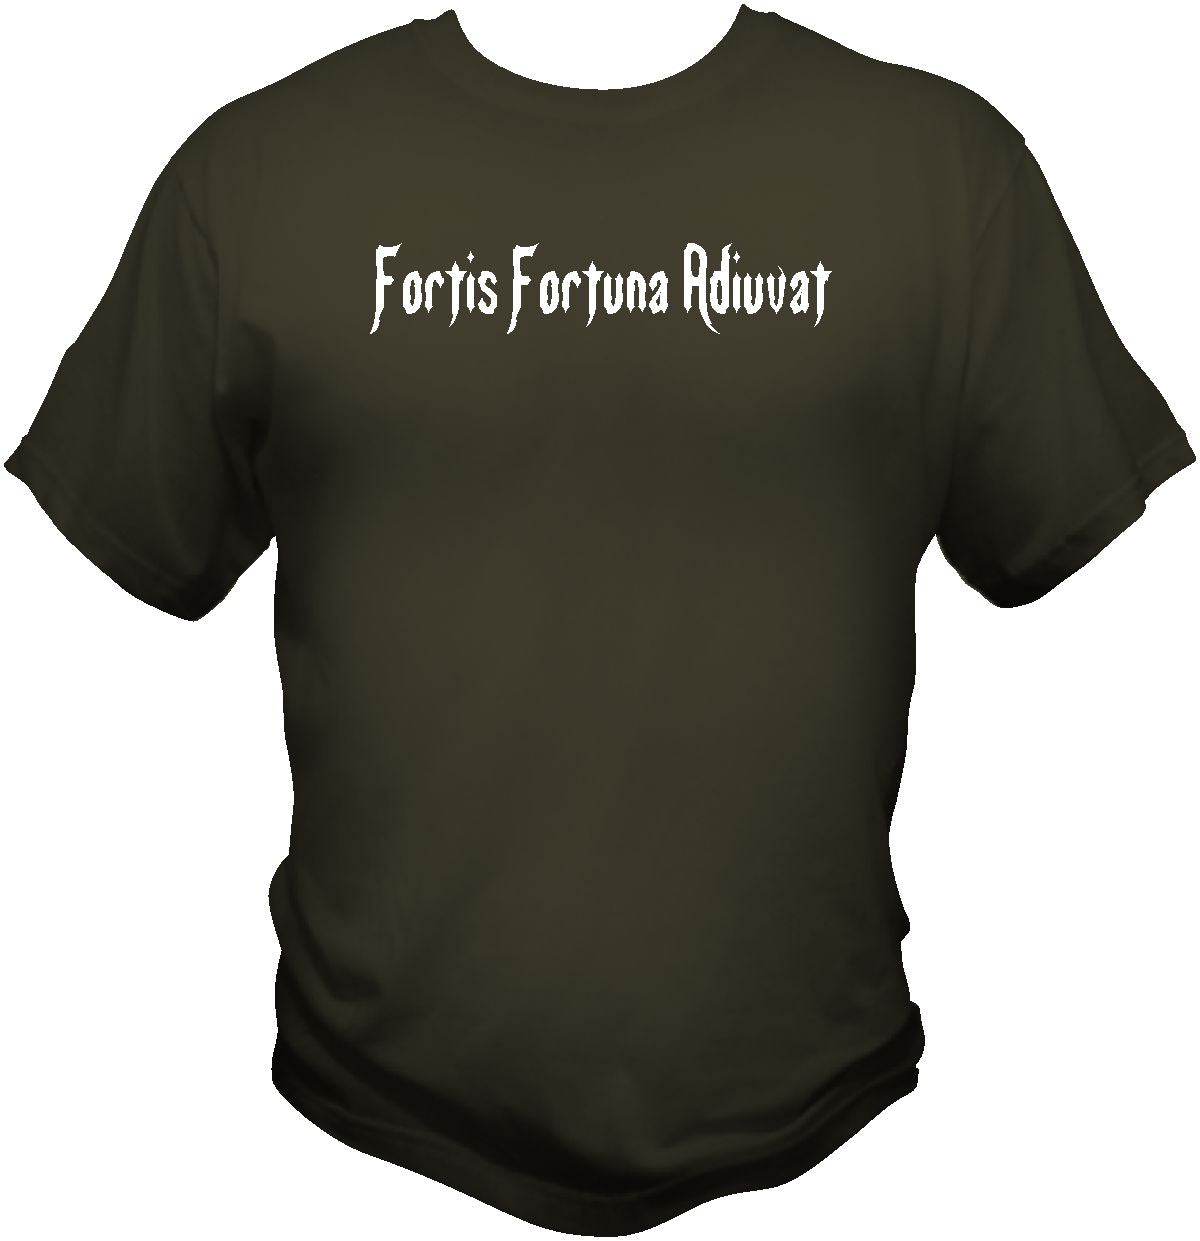 John Wick Fortis Fortuna Adiuvat T Shirt T Shirts Redheaded T Shirts Small Olive Drab 